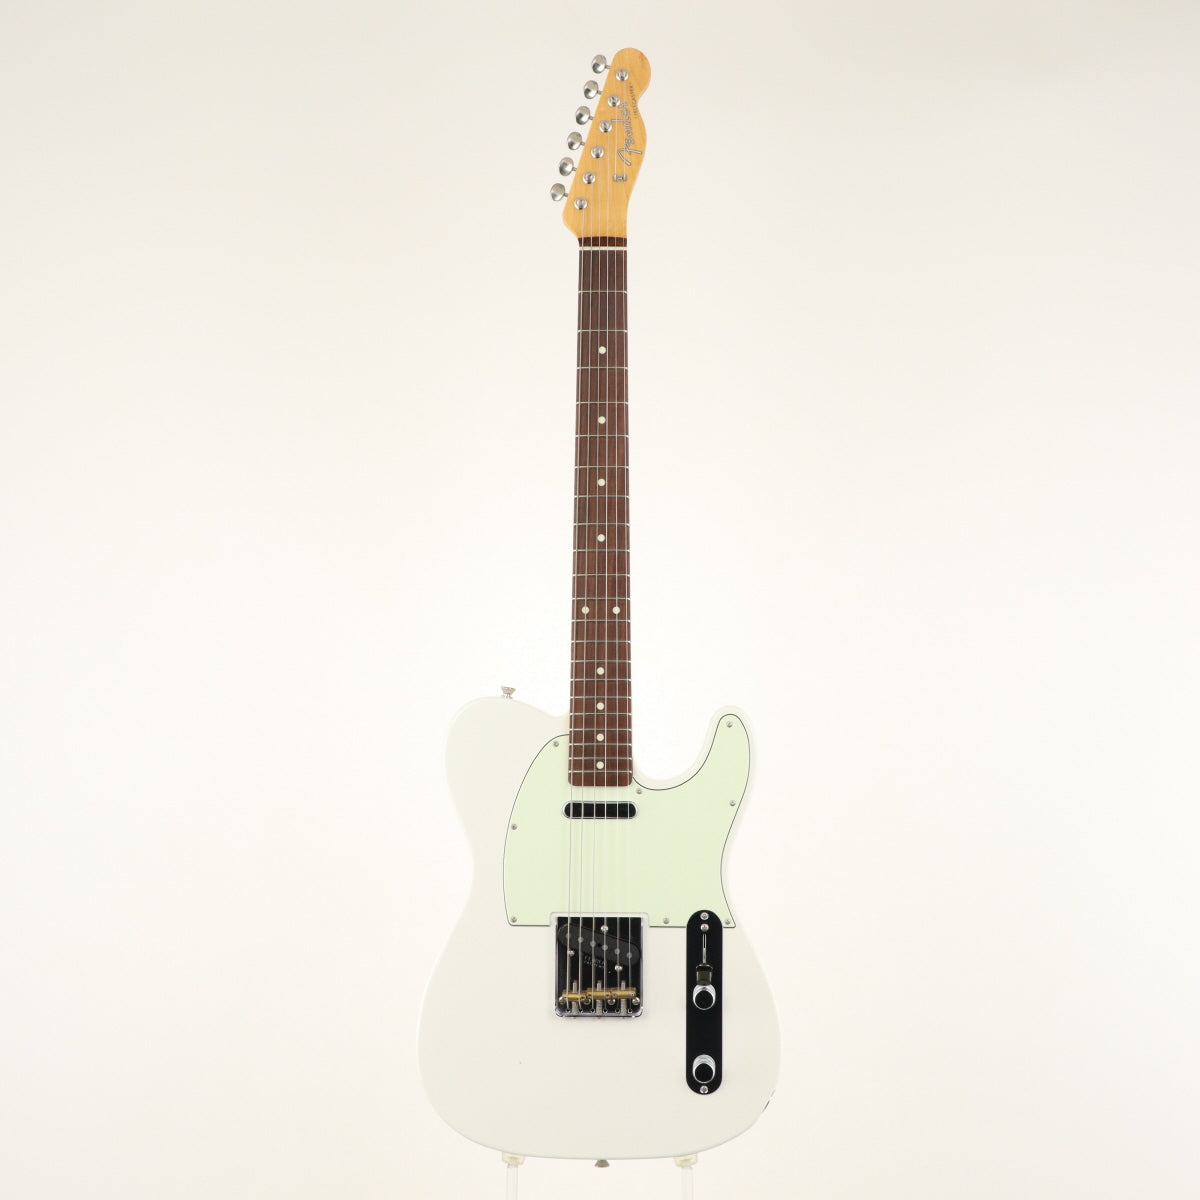 Telecast　Hybrid　Japan　in　USED　Made　Music　Fender　Corporation.　–　Fender　60s　Ishibashi